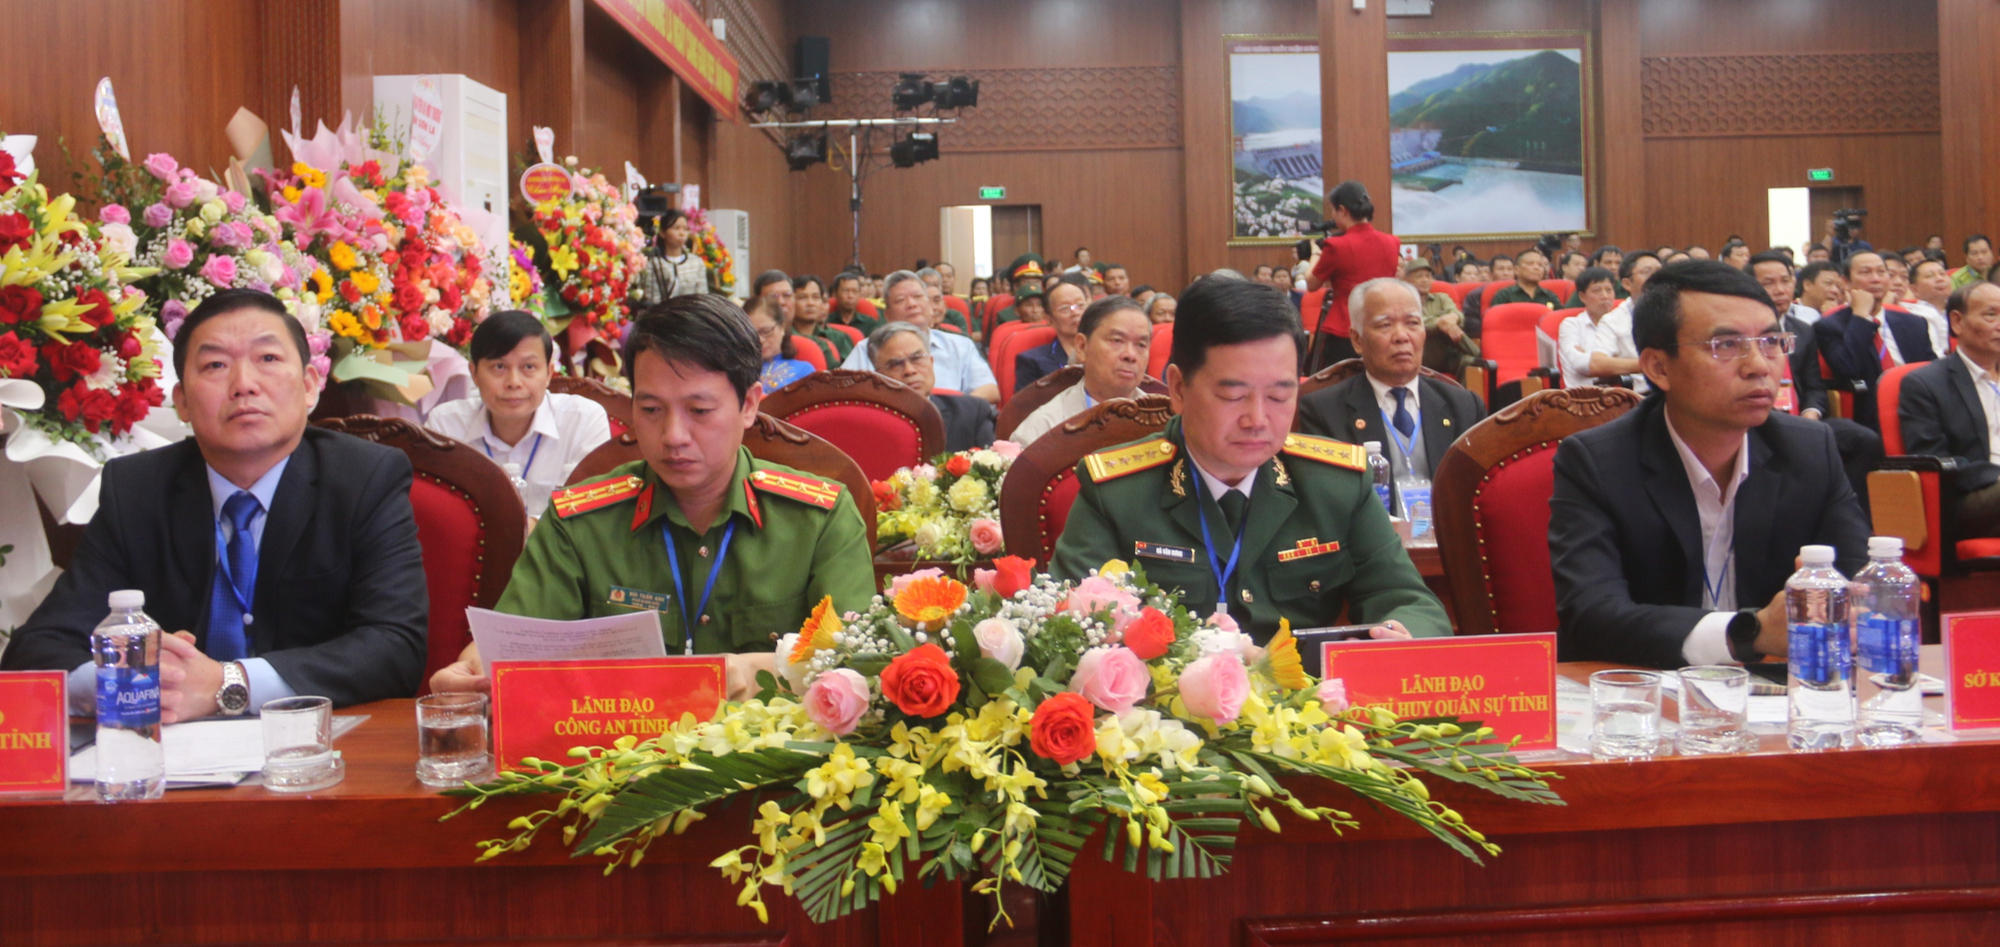 Huyện Mường La (Sơn La): Kỷ niệm 70 năm Ngày giải phóng - Ảnh 9.